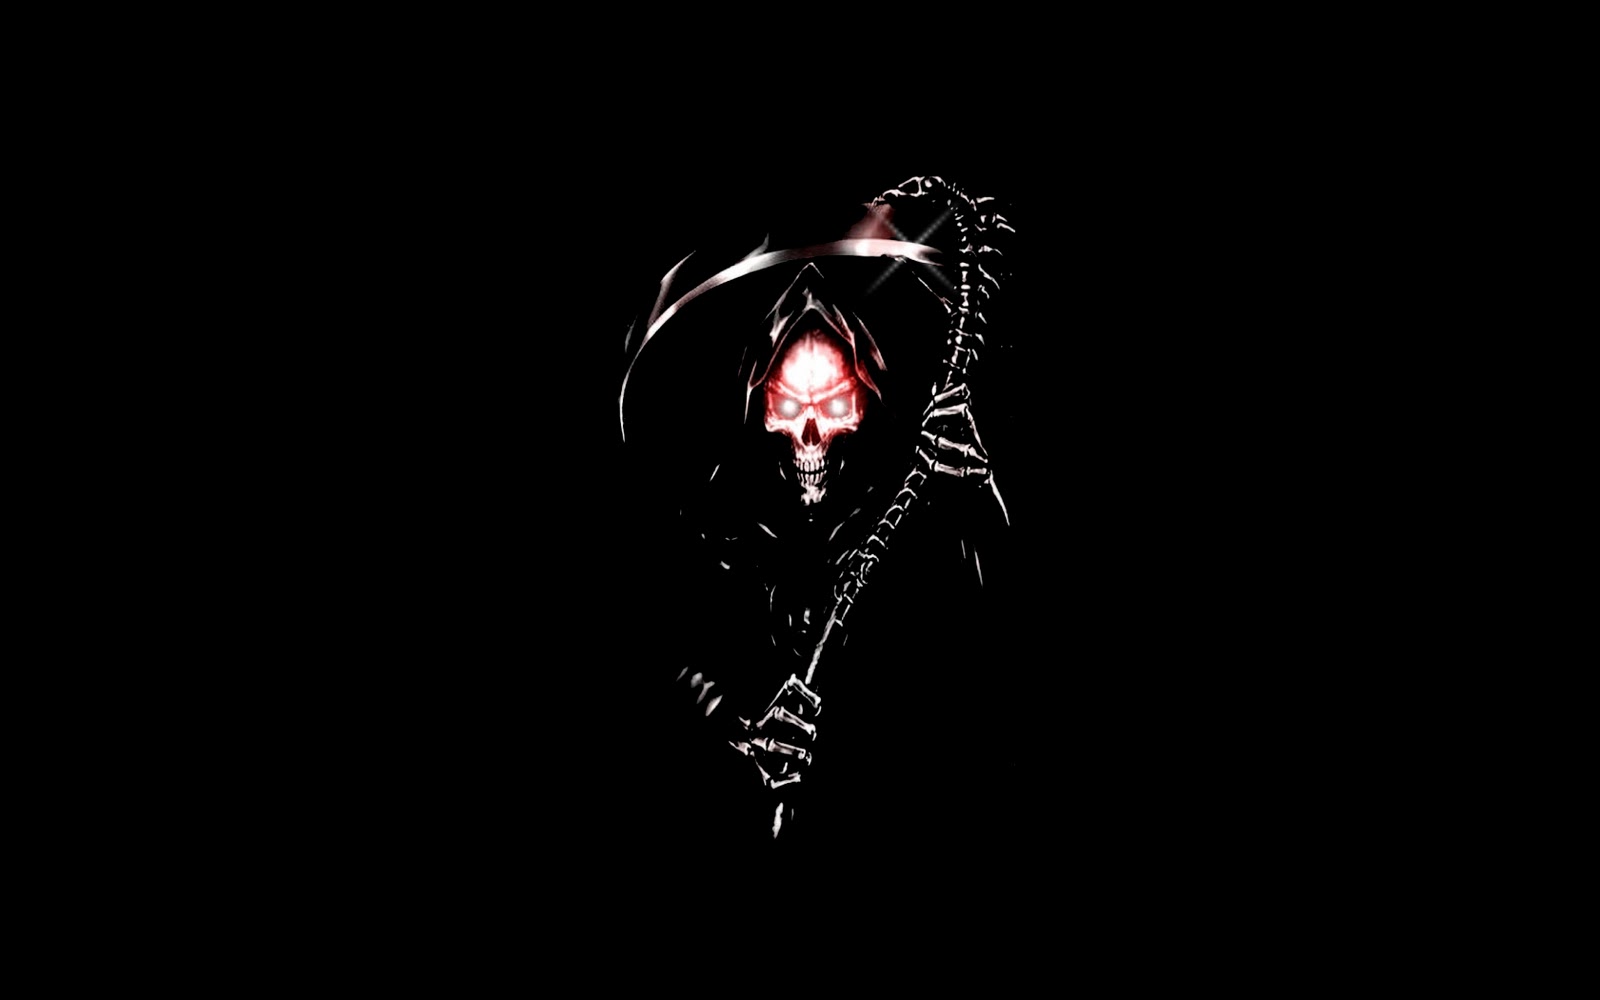 Female grim reaper Picture 97163687  Blingeecom